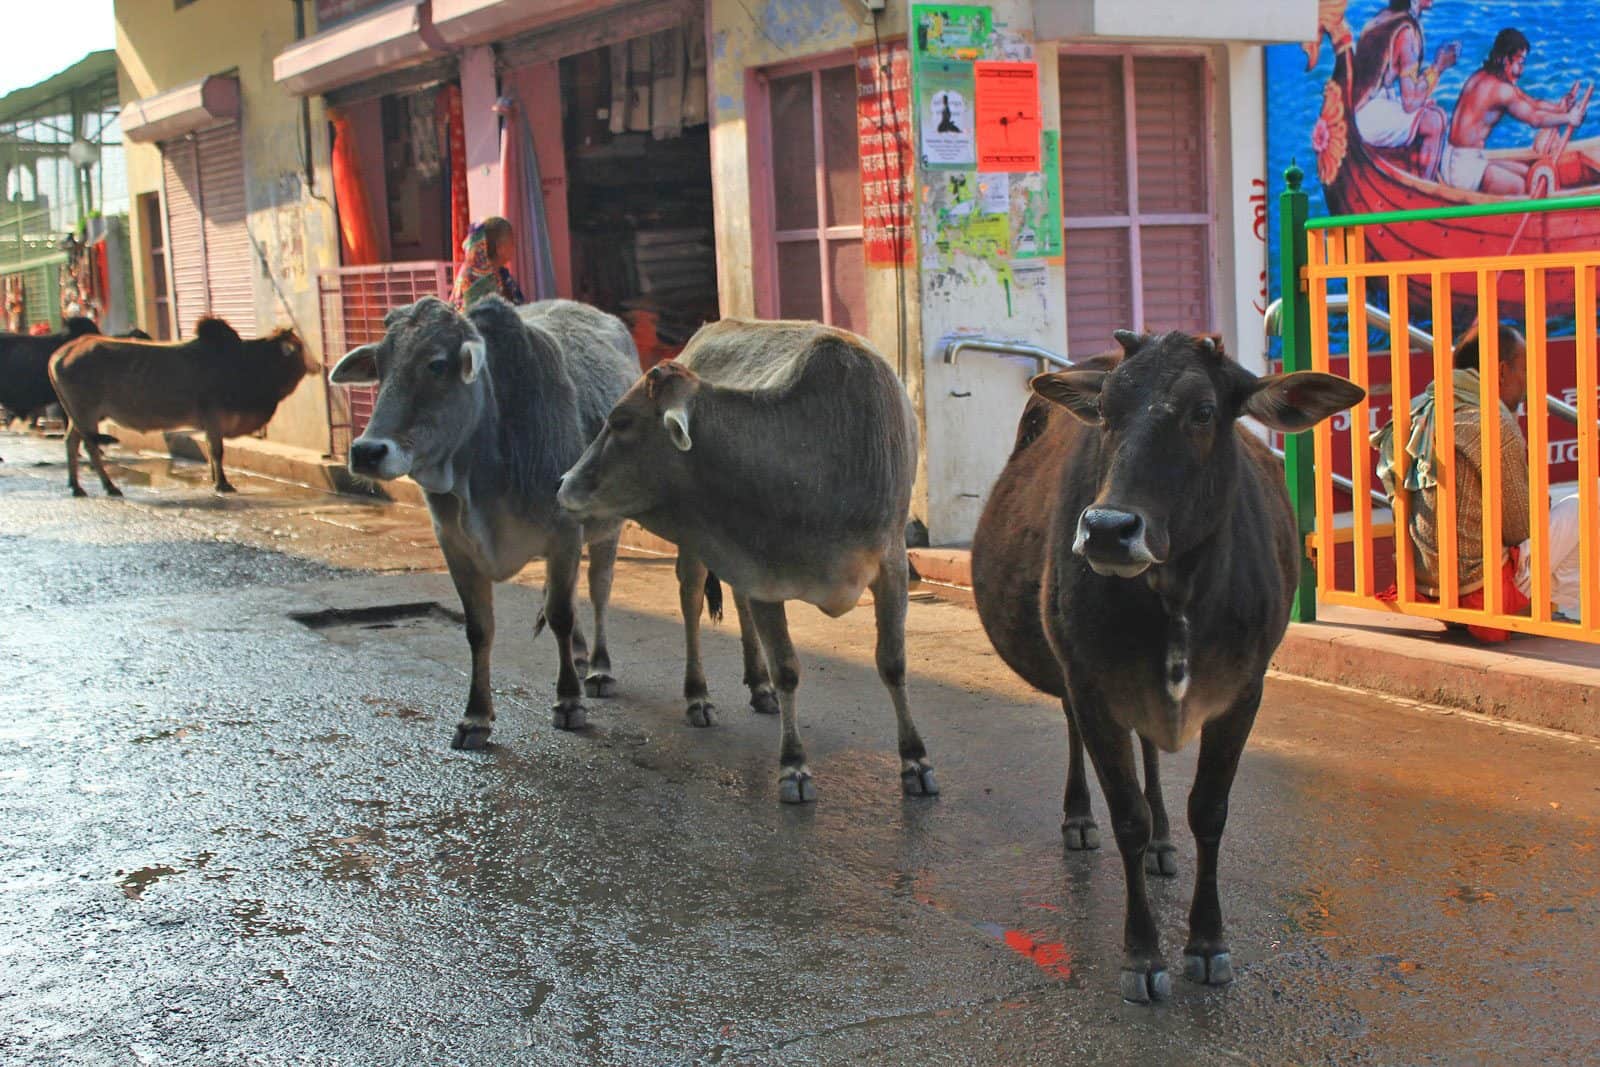 抵达瑞诗凯诗的清晨，寻觅住宿的当儿与牛牛相逢。神圣的牛随处可见，却比瓦拉纳西少。